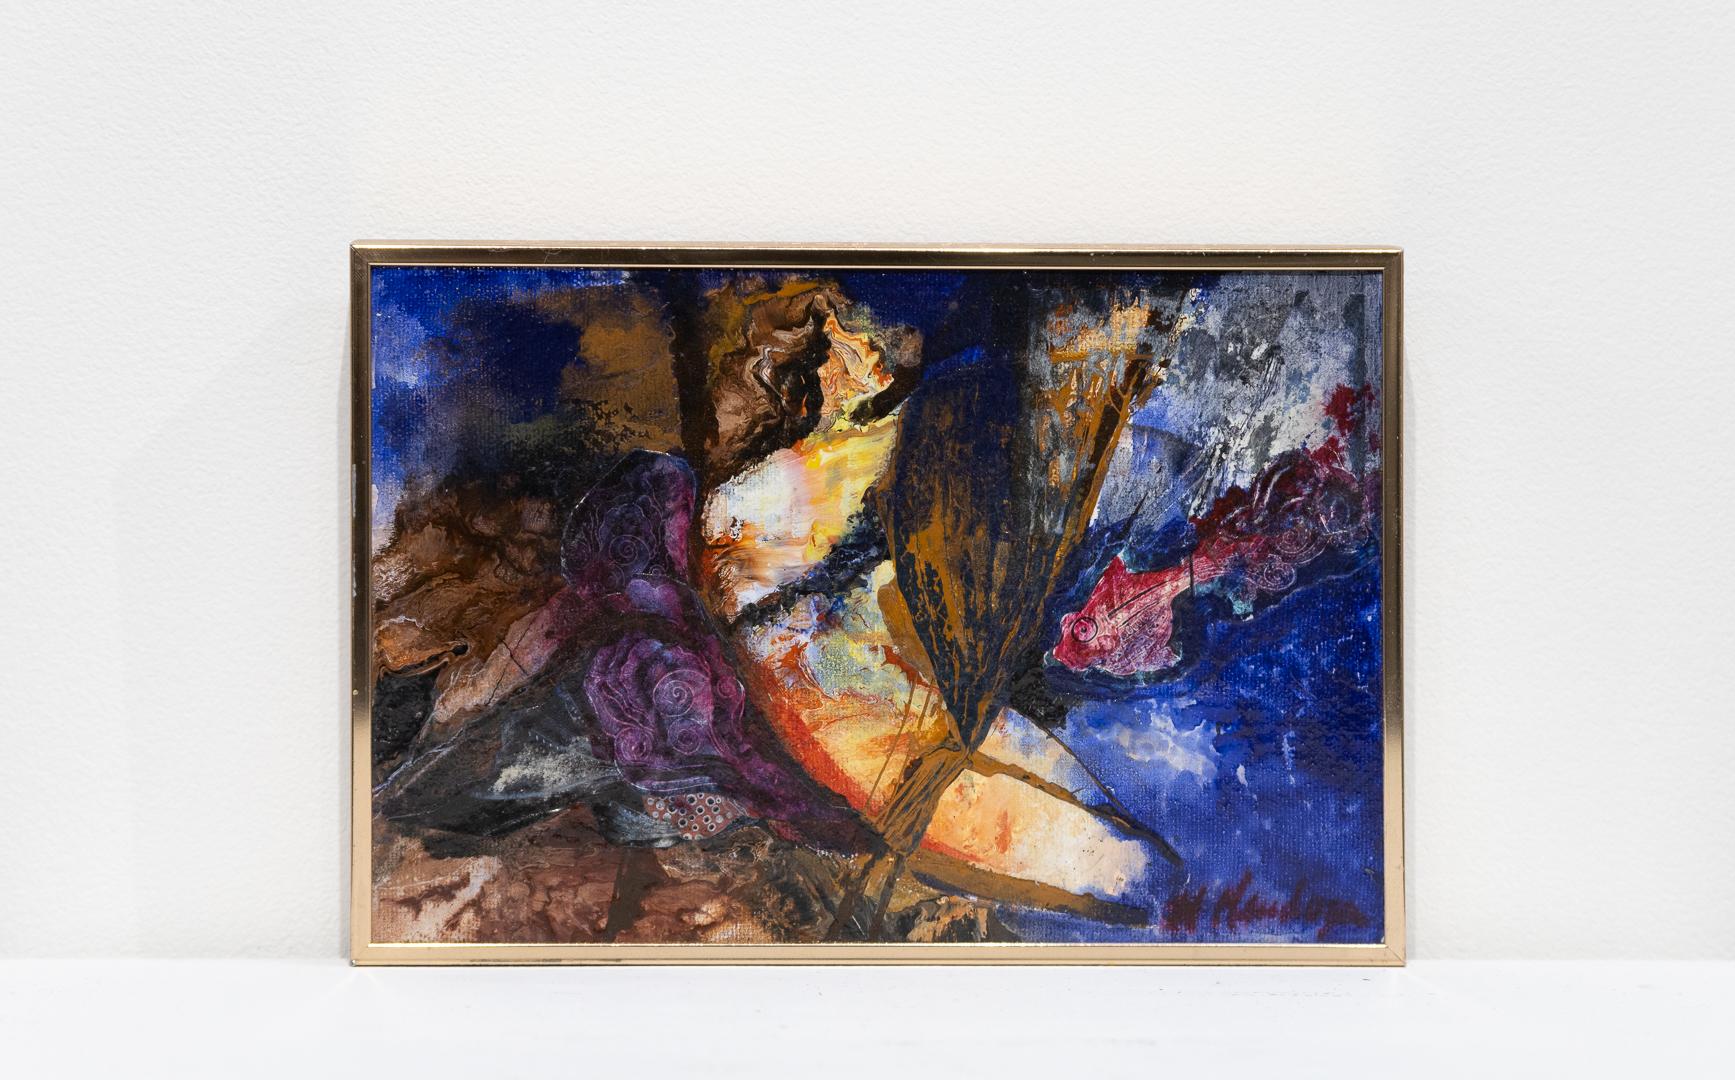 Abstract Painting Nora Mendoza - « Untitled », paysage abstrait coloré, huile sur toile, signé par l'artiste